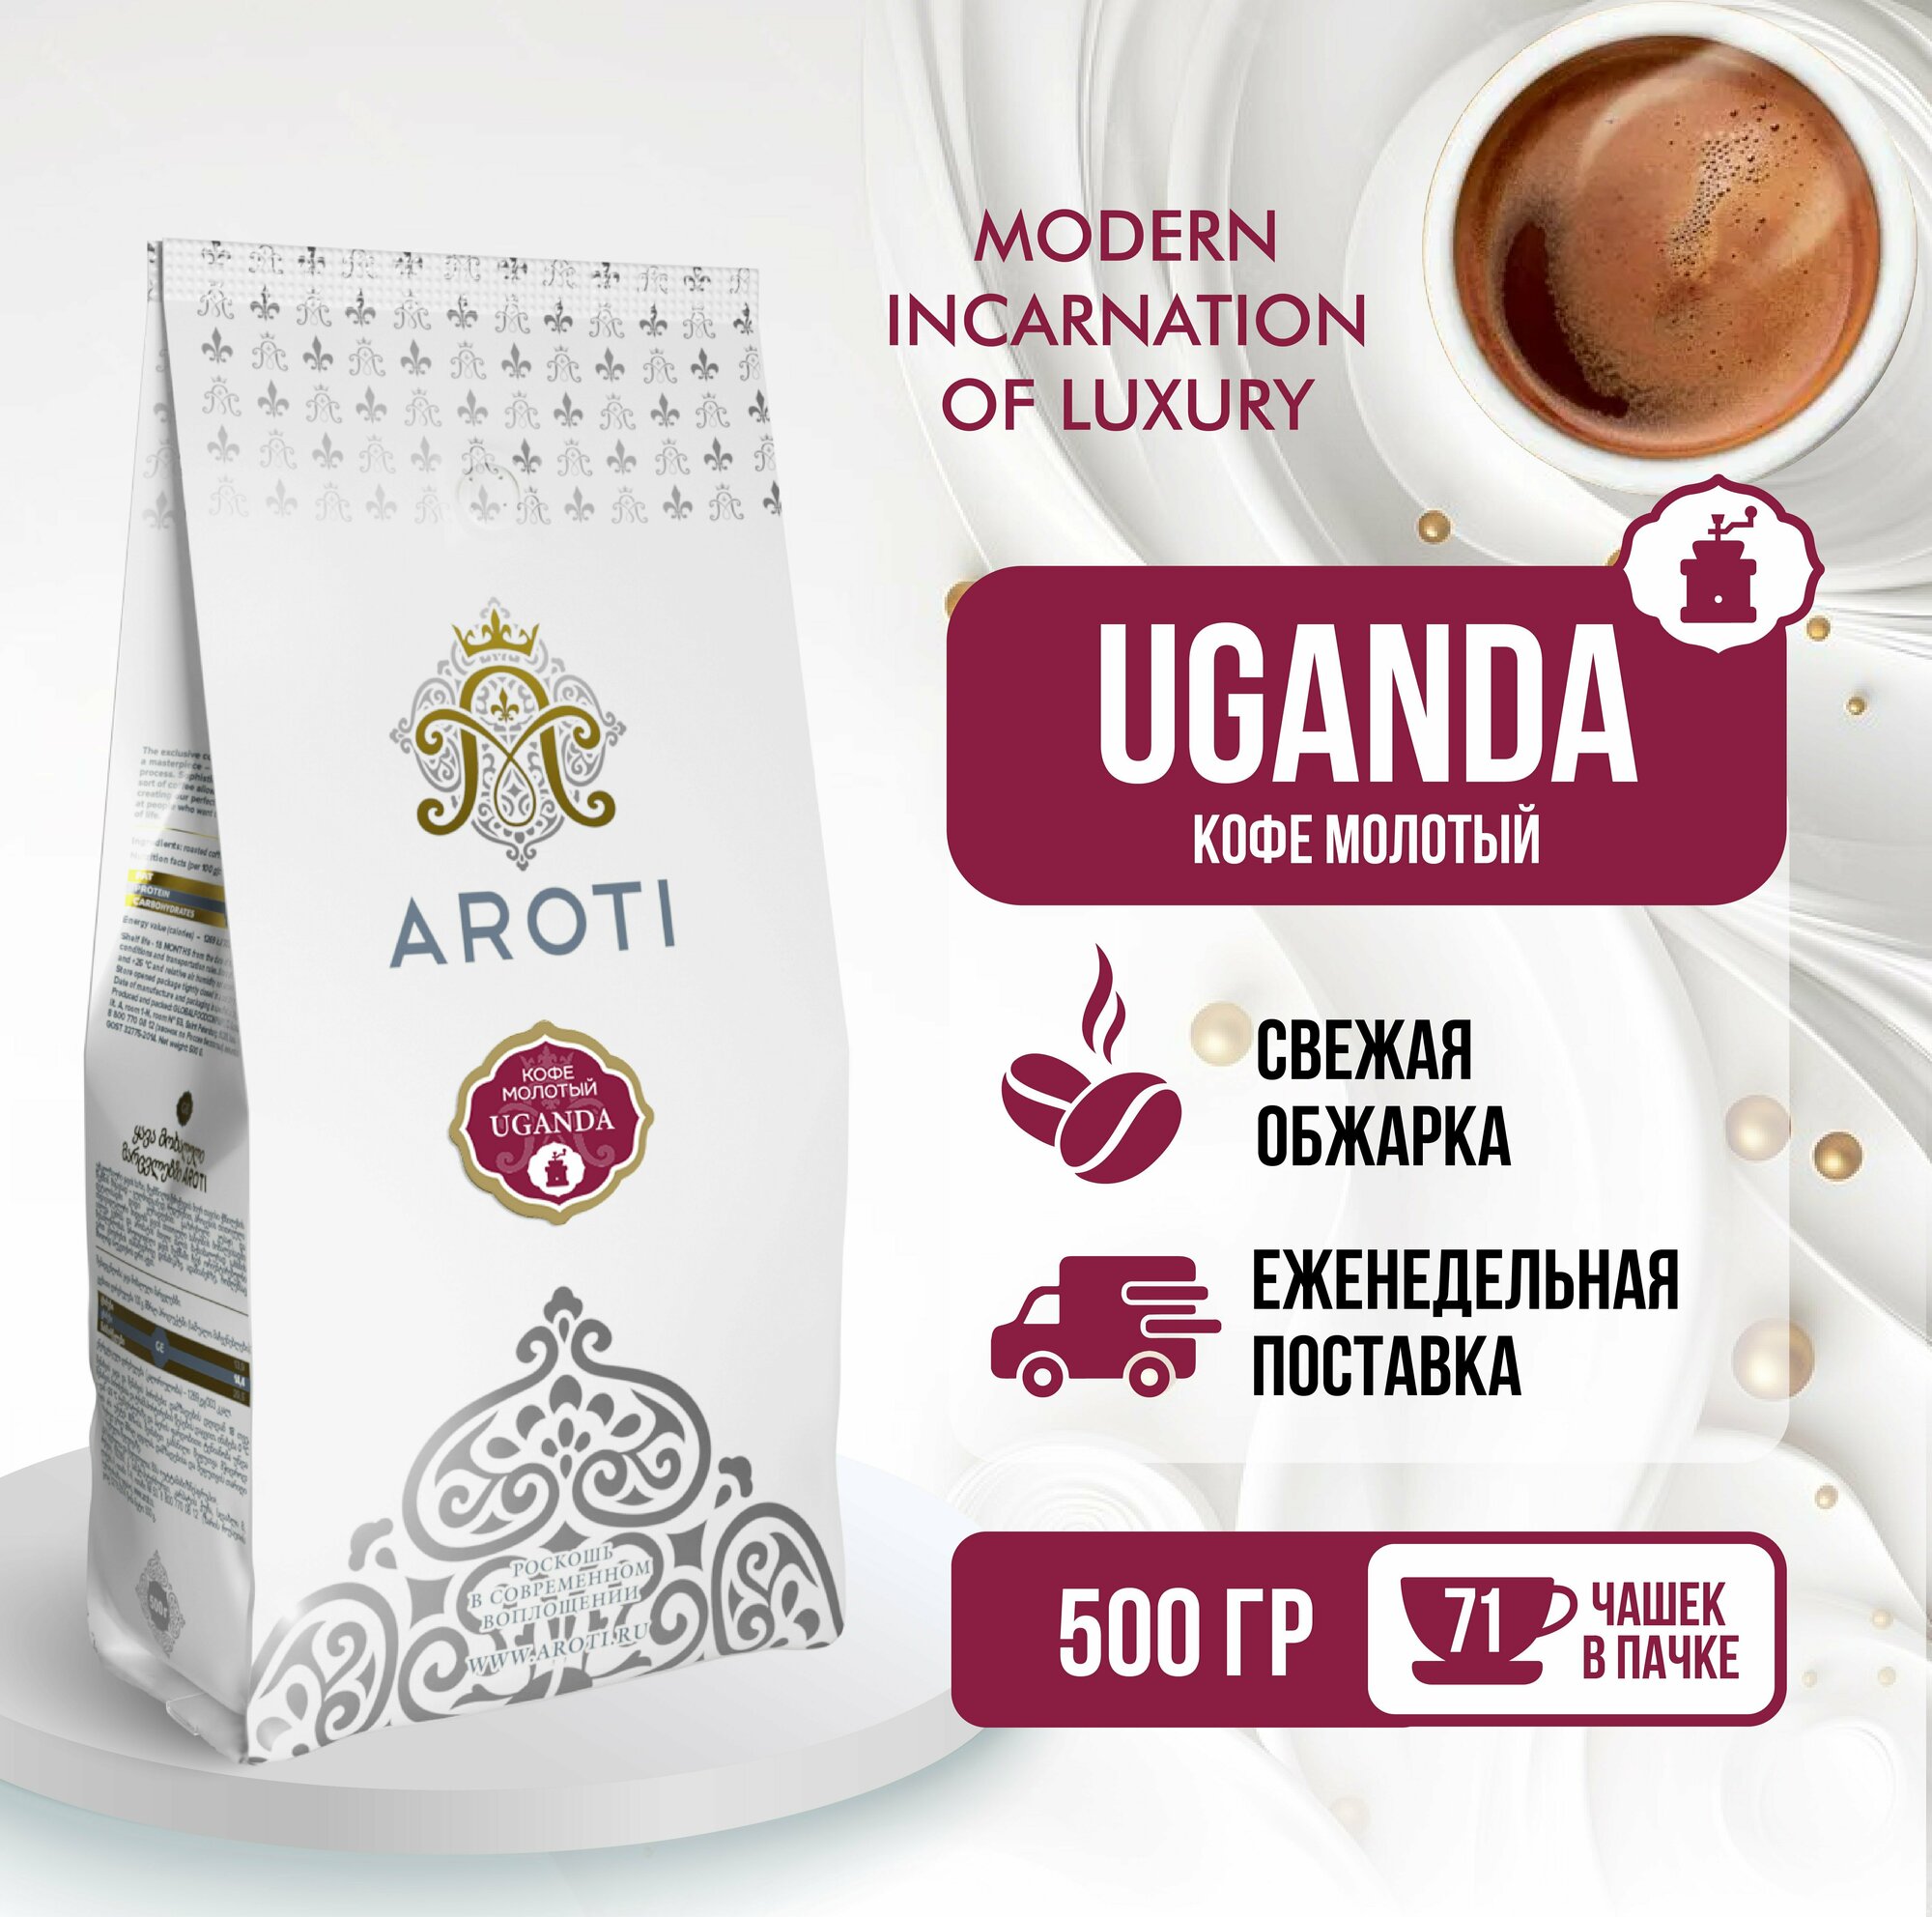 Кофе молотый моносорт робуста UGANDA (Уганда), Aroti, средняя обжарка, свежеобжаренный, 500 гр.